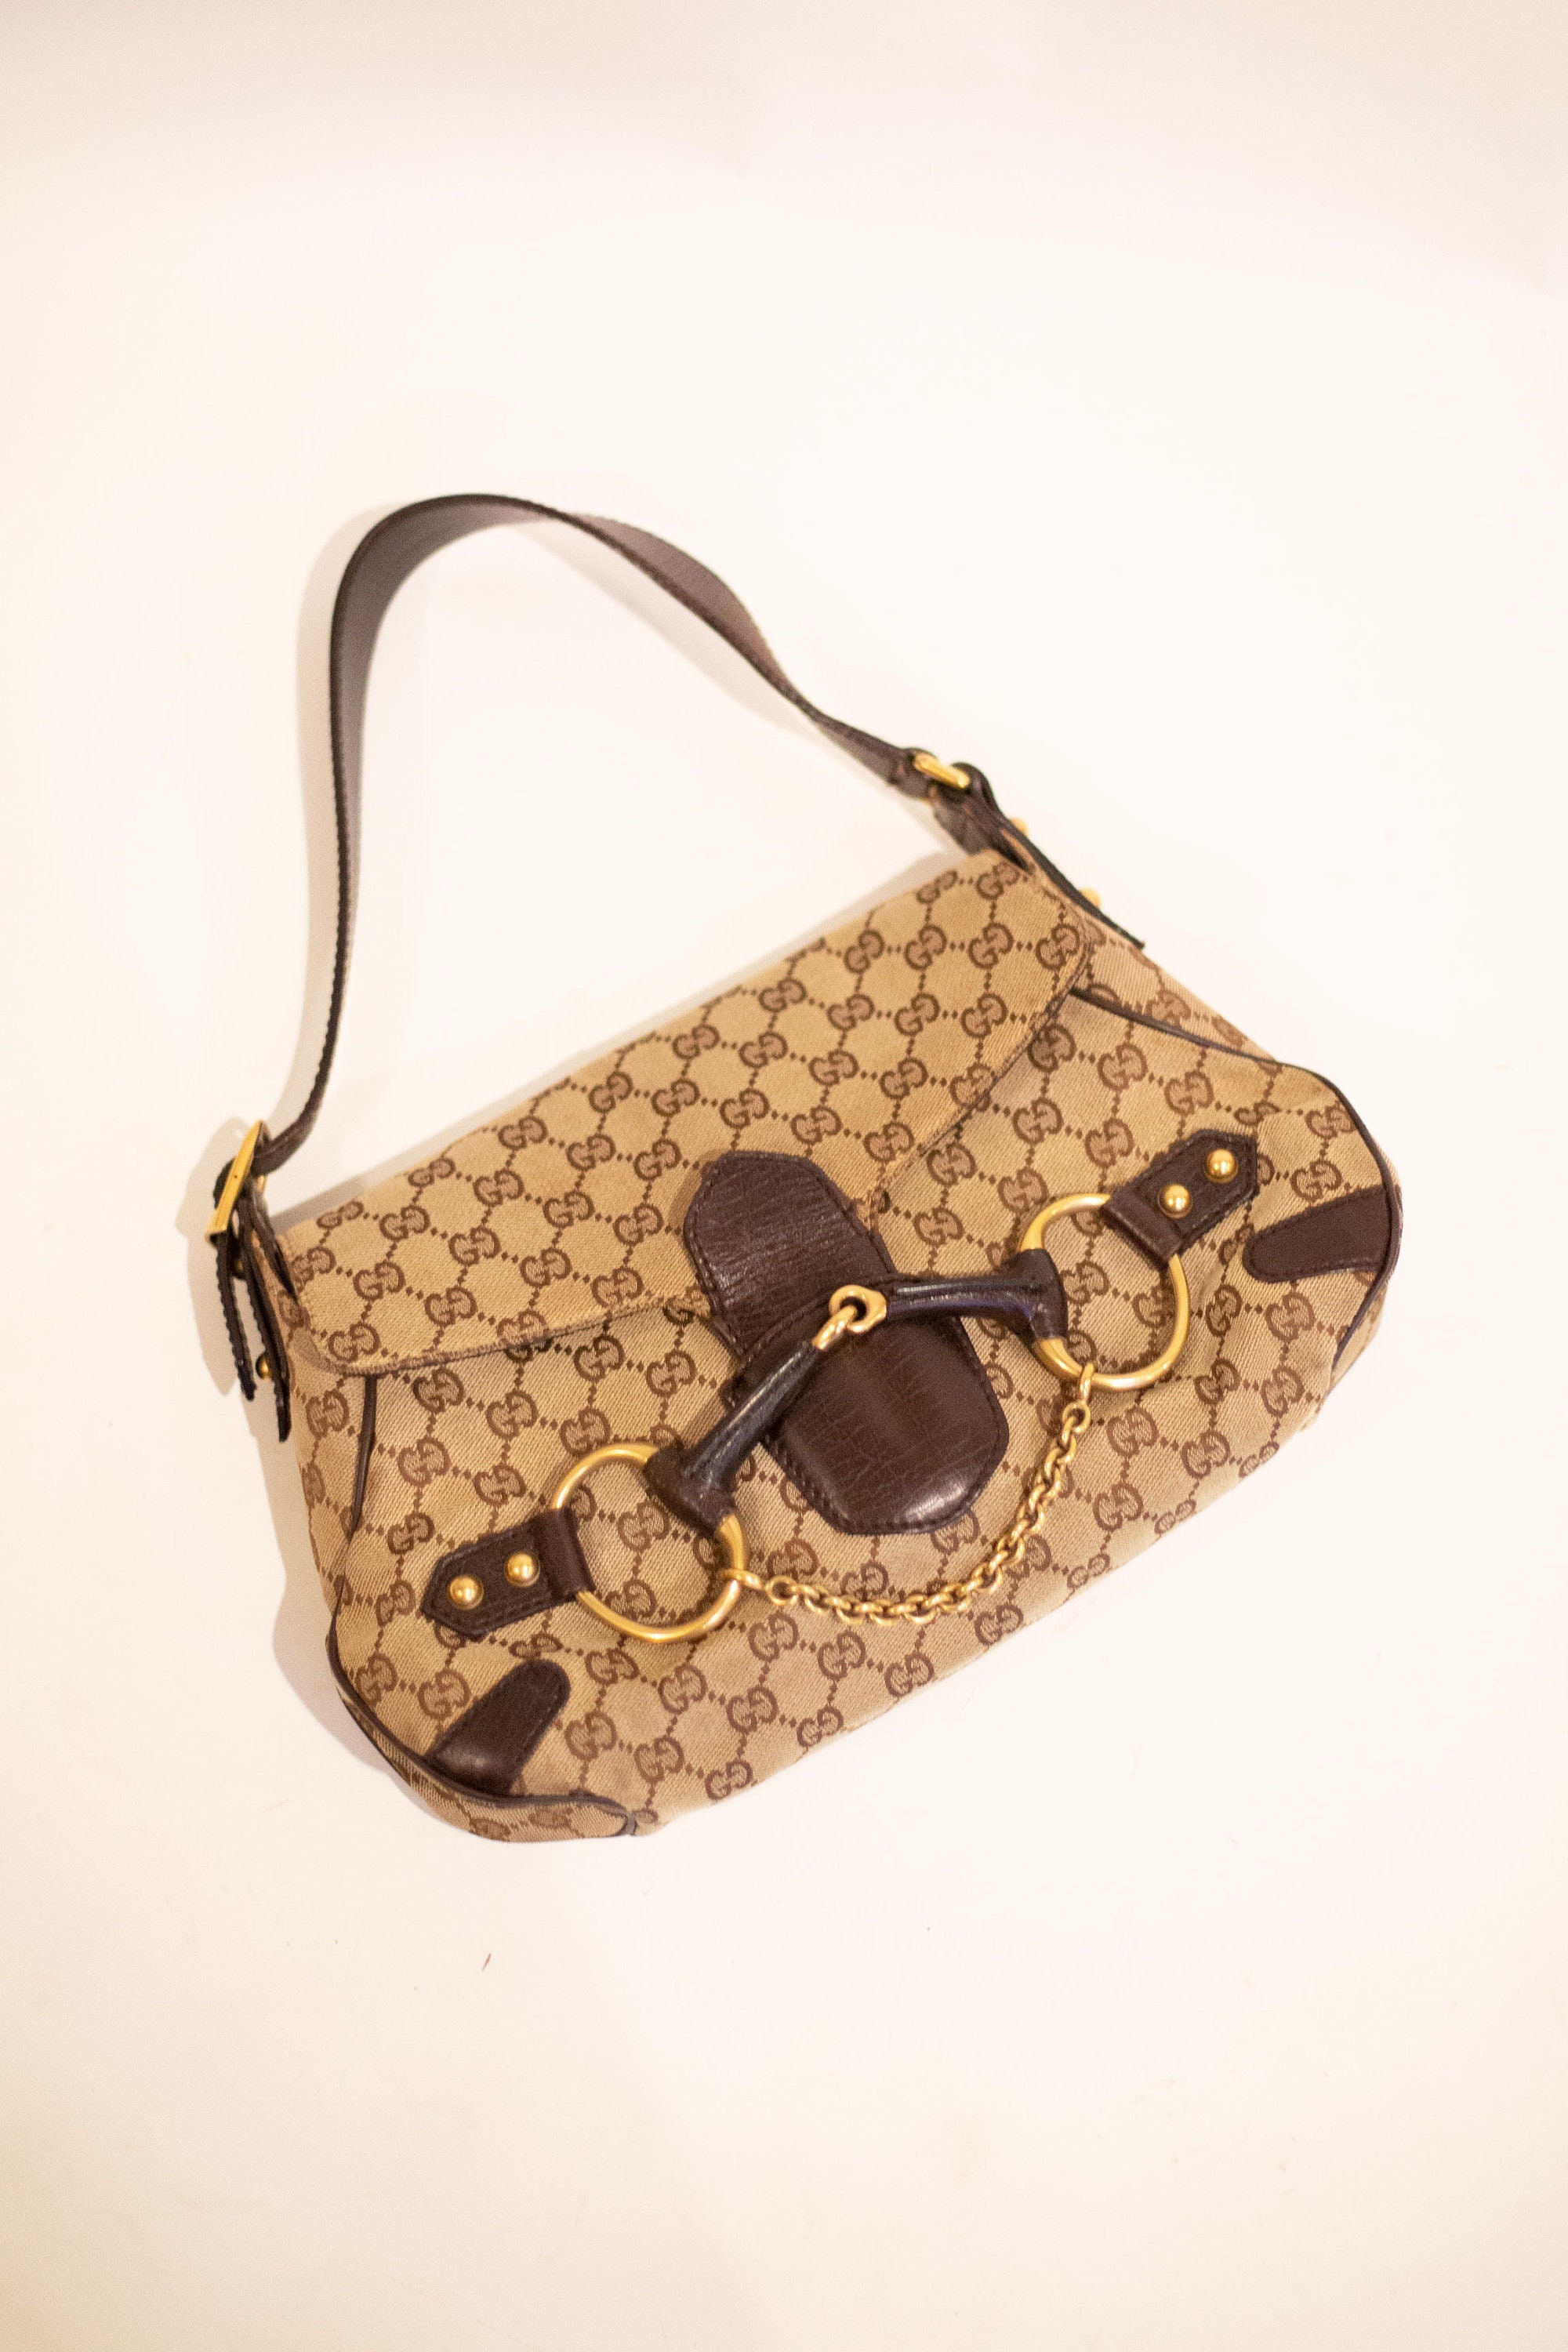 Vintage Gucci Horsebit Flap Shoulder Bag in GG Canvas - Etsy